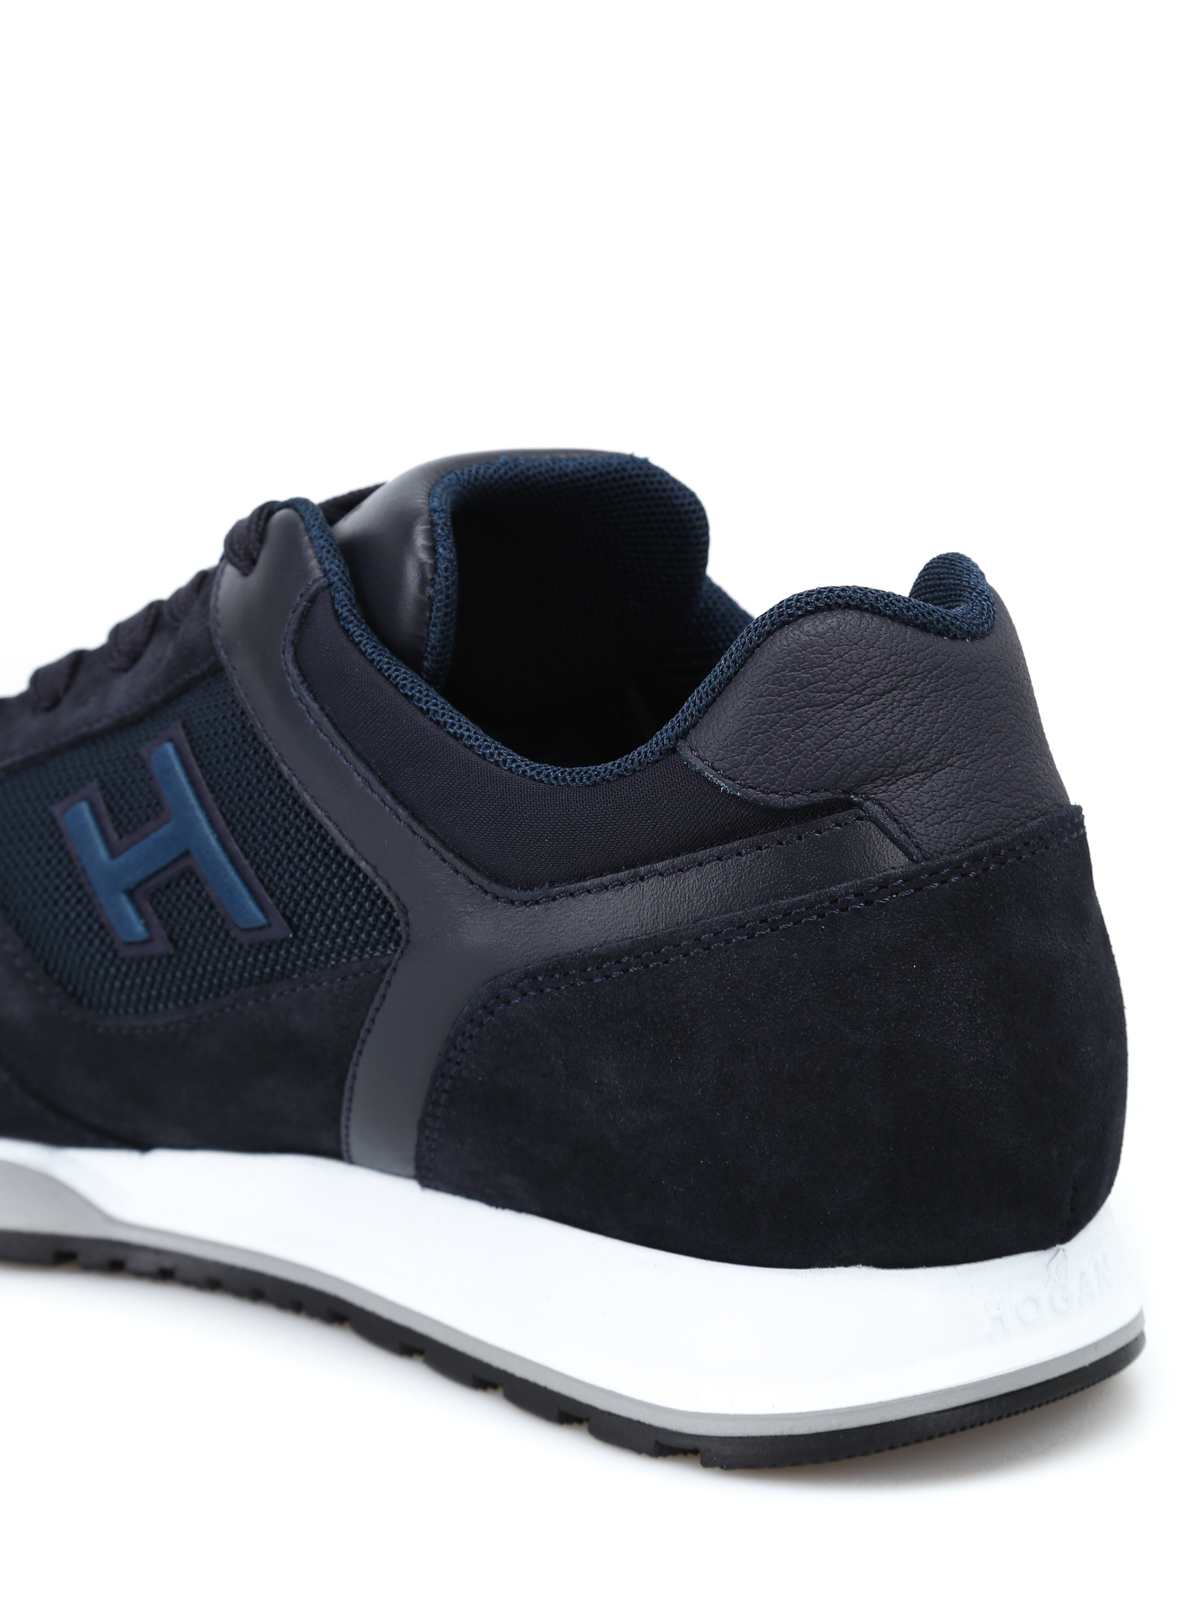 hogan h321 sneakers